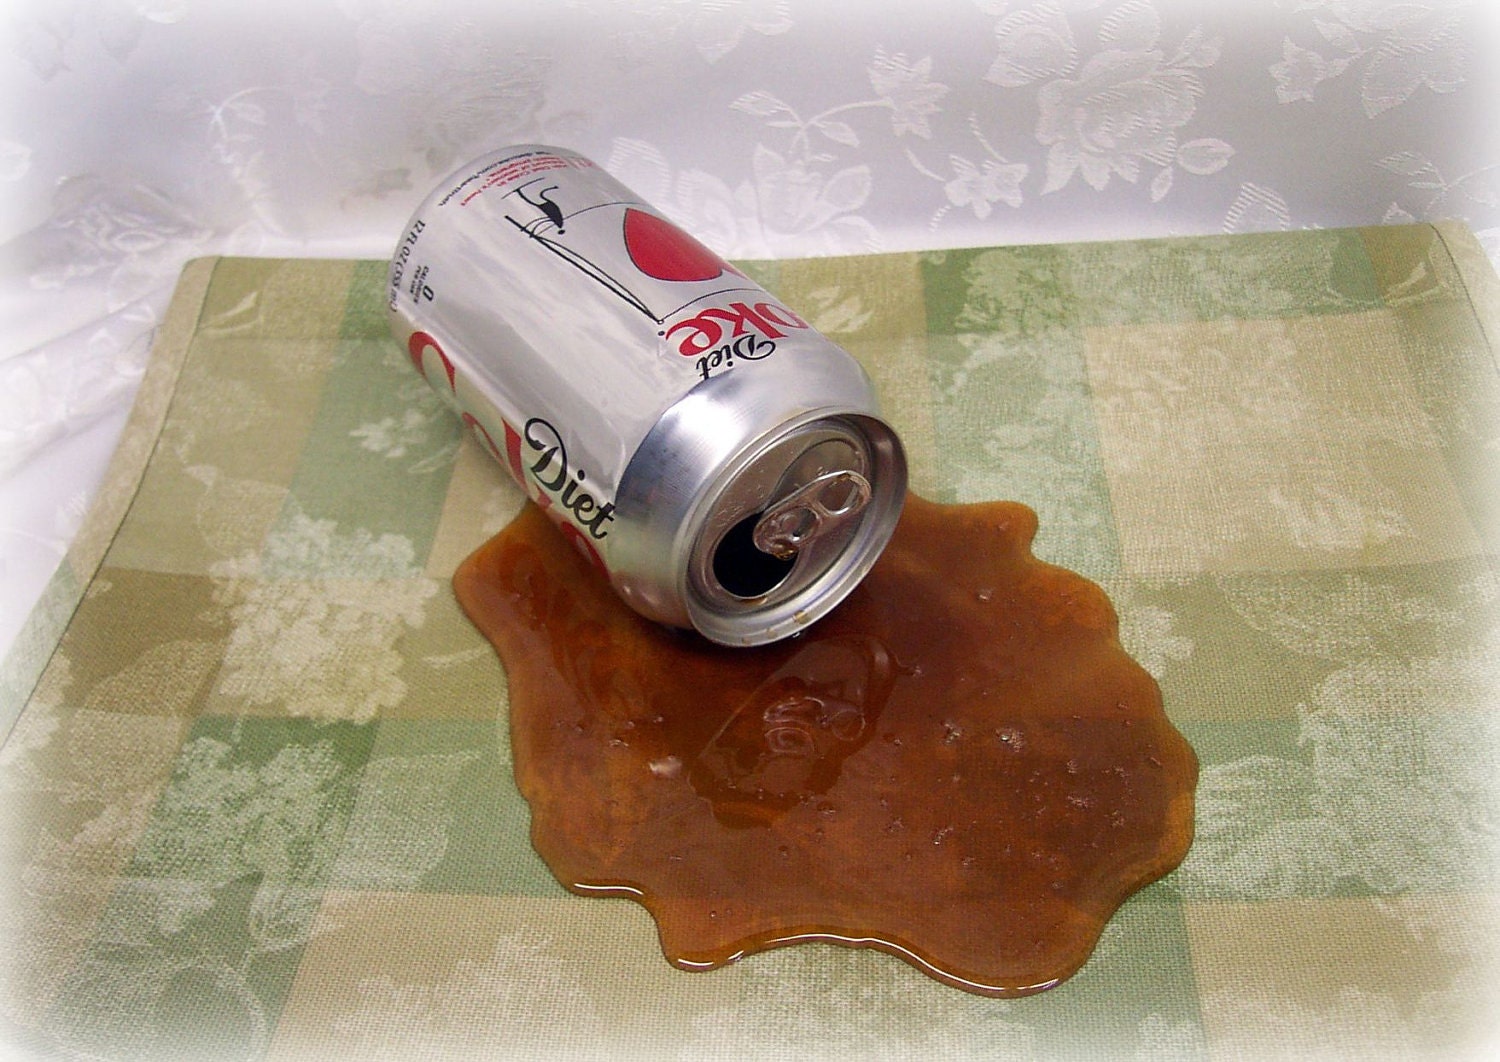 Coke Spill